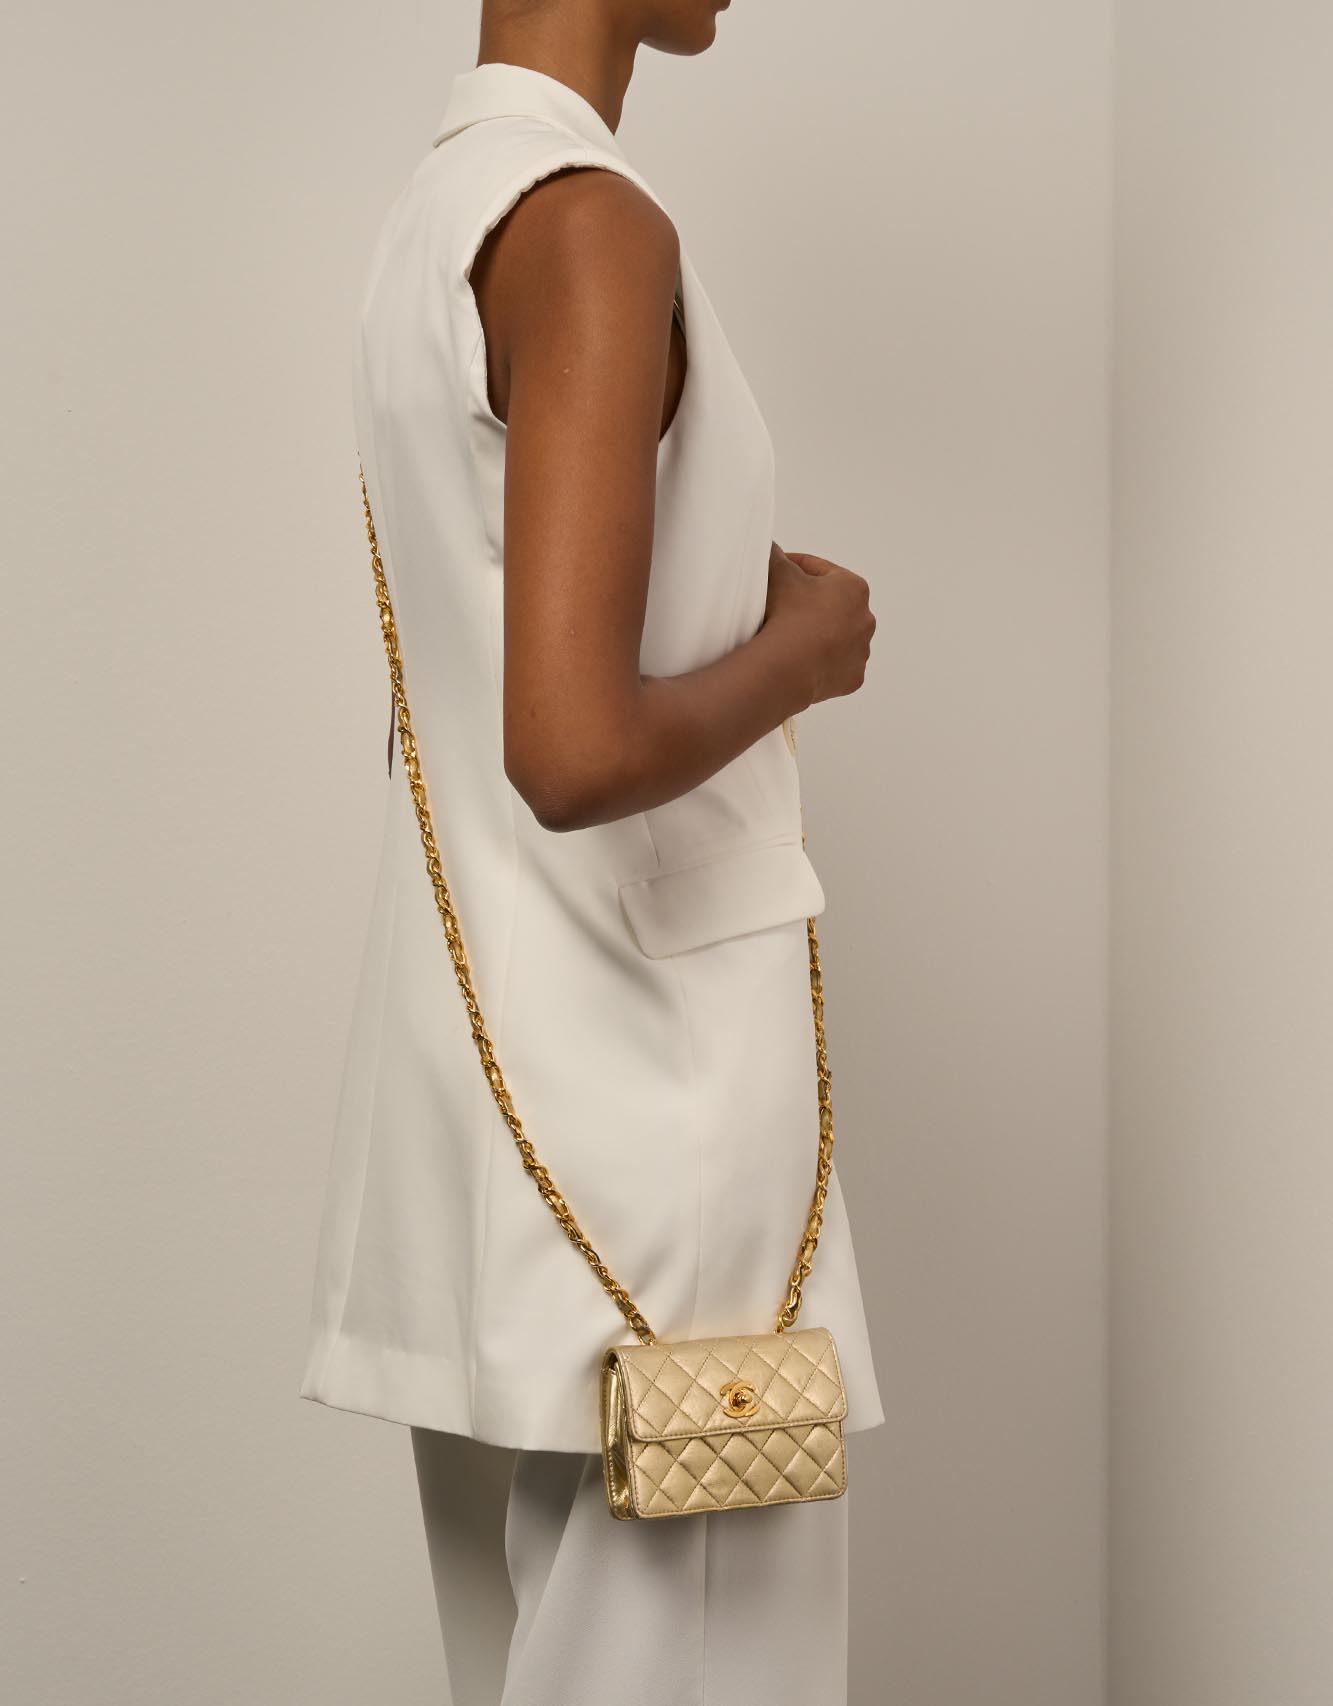 Chanel Timeless ExtraMini Gold Größen Getragen | Verkaufen Sie Ihre Designer-Tasche auf Saclab.com